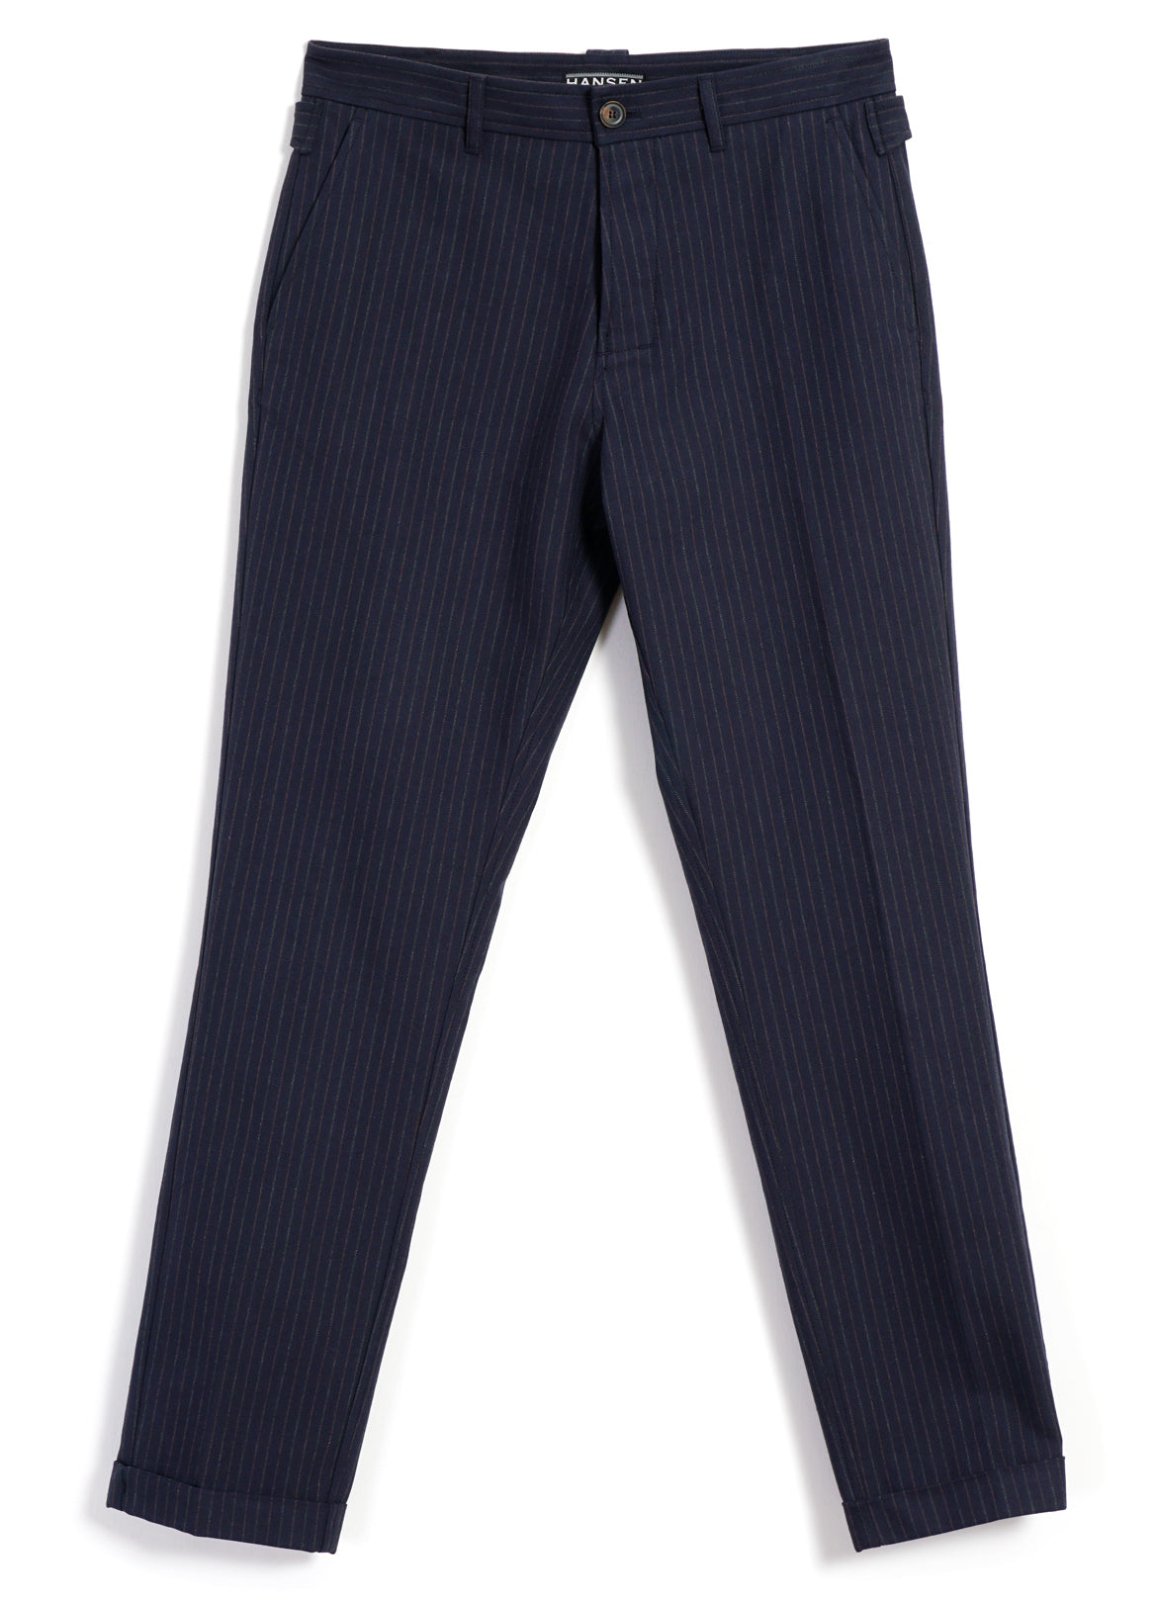 HANSEN GARMENTS - FINN | Side Buckle Regular Trousers | Blue Pin - HANSEN Garments